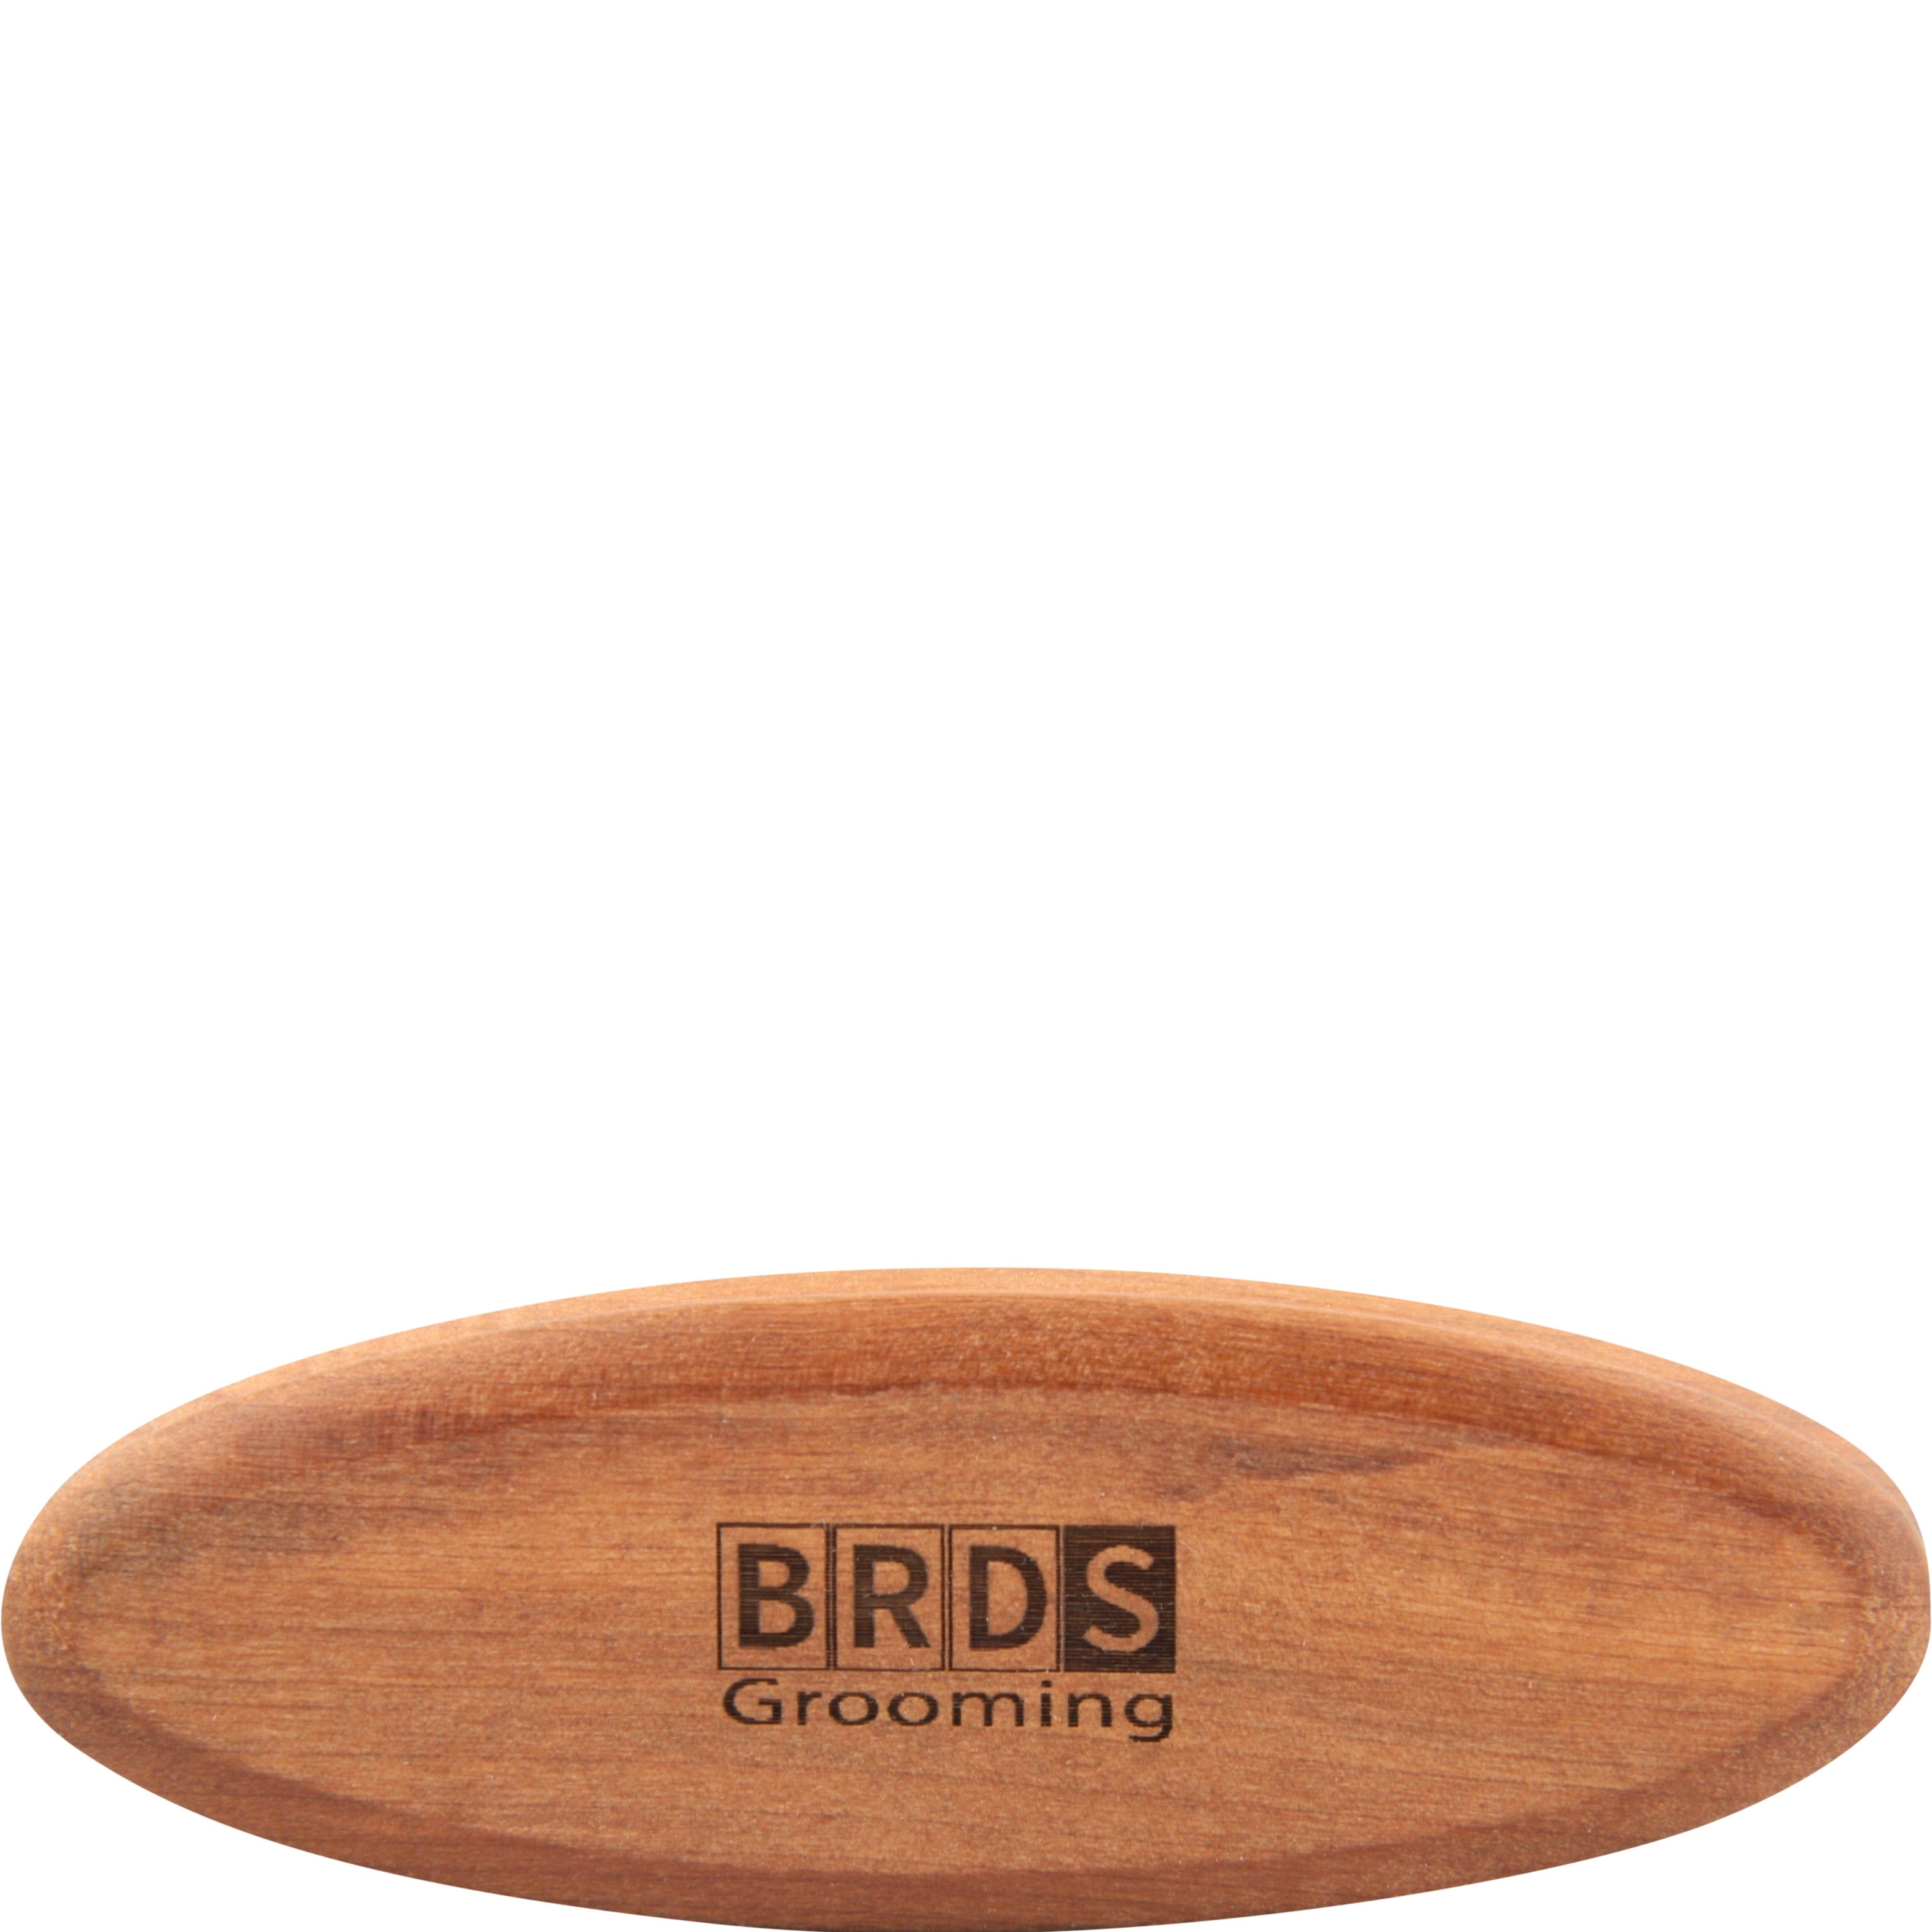 Beards Grooming Baardborstel (Small) - Wildzwijn haar